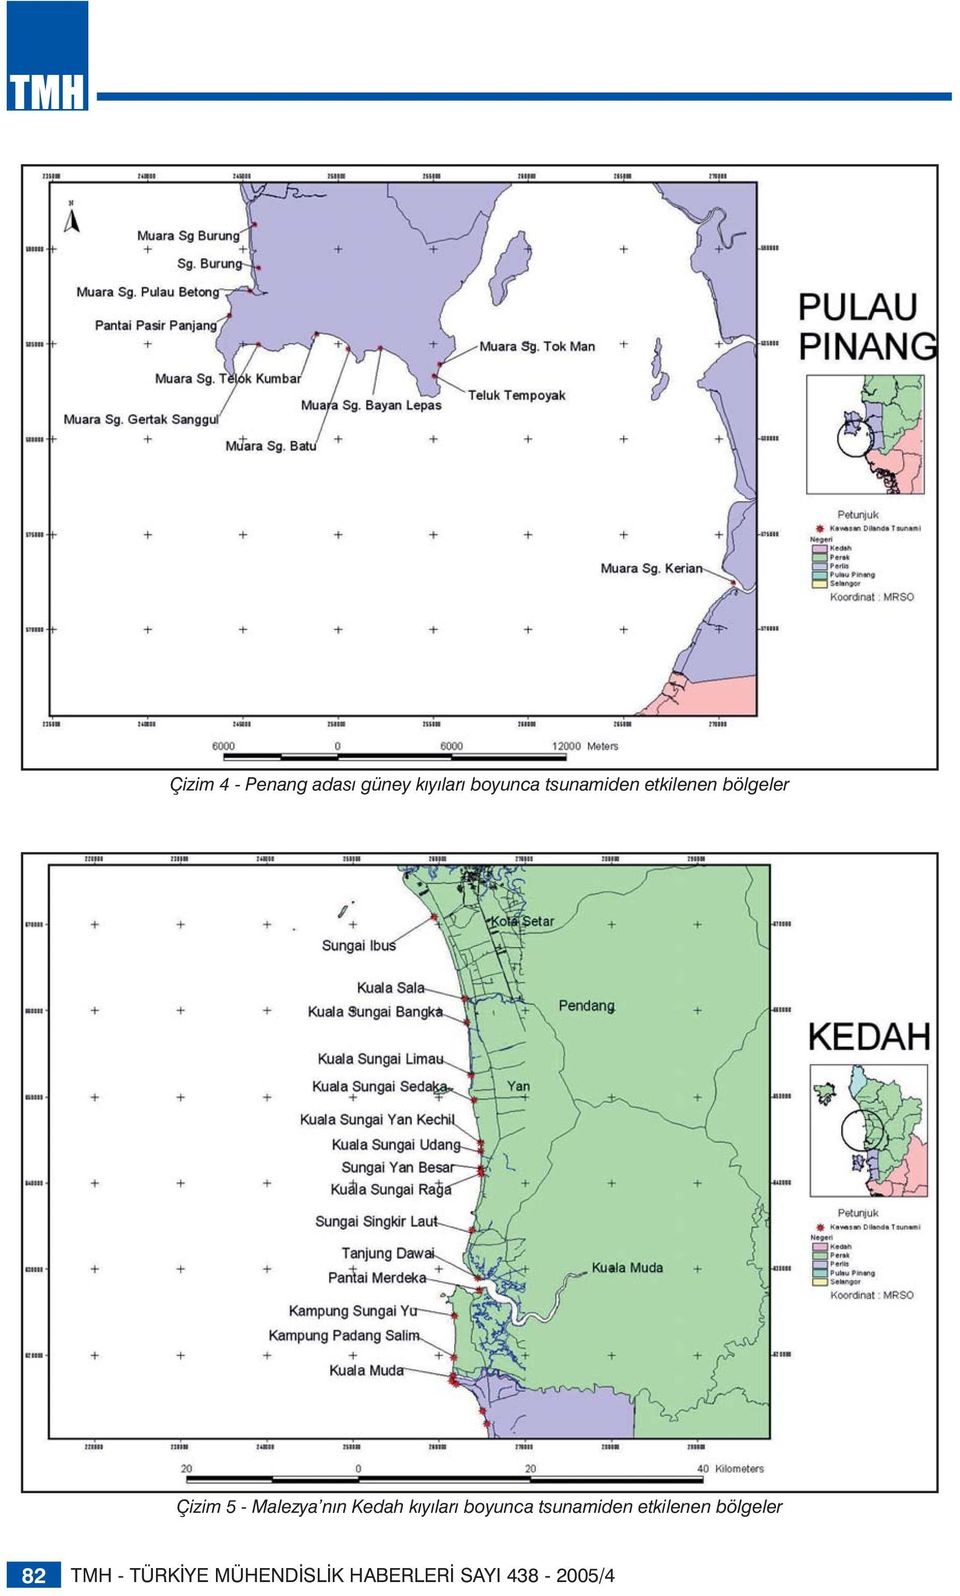 Kedah kıyıları boyunca tsunamiden etkilenen